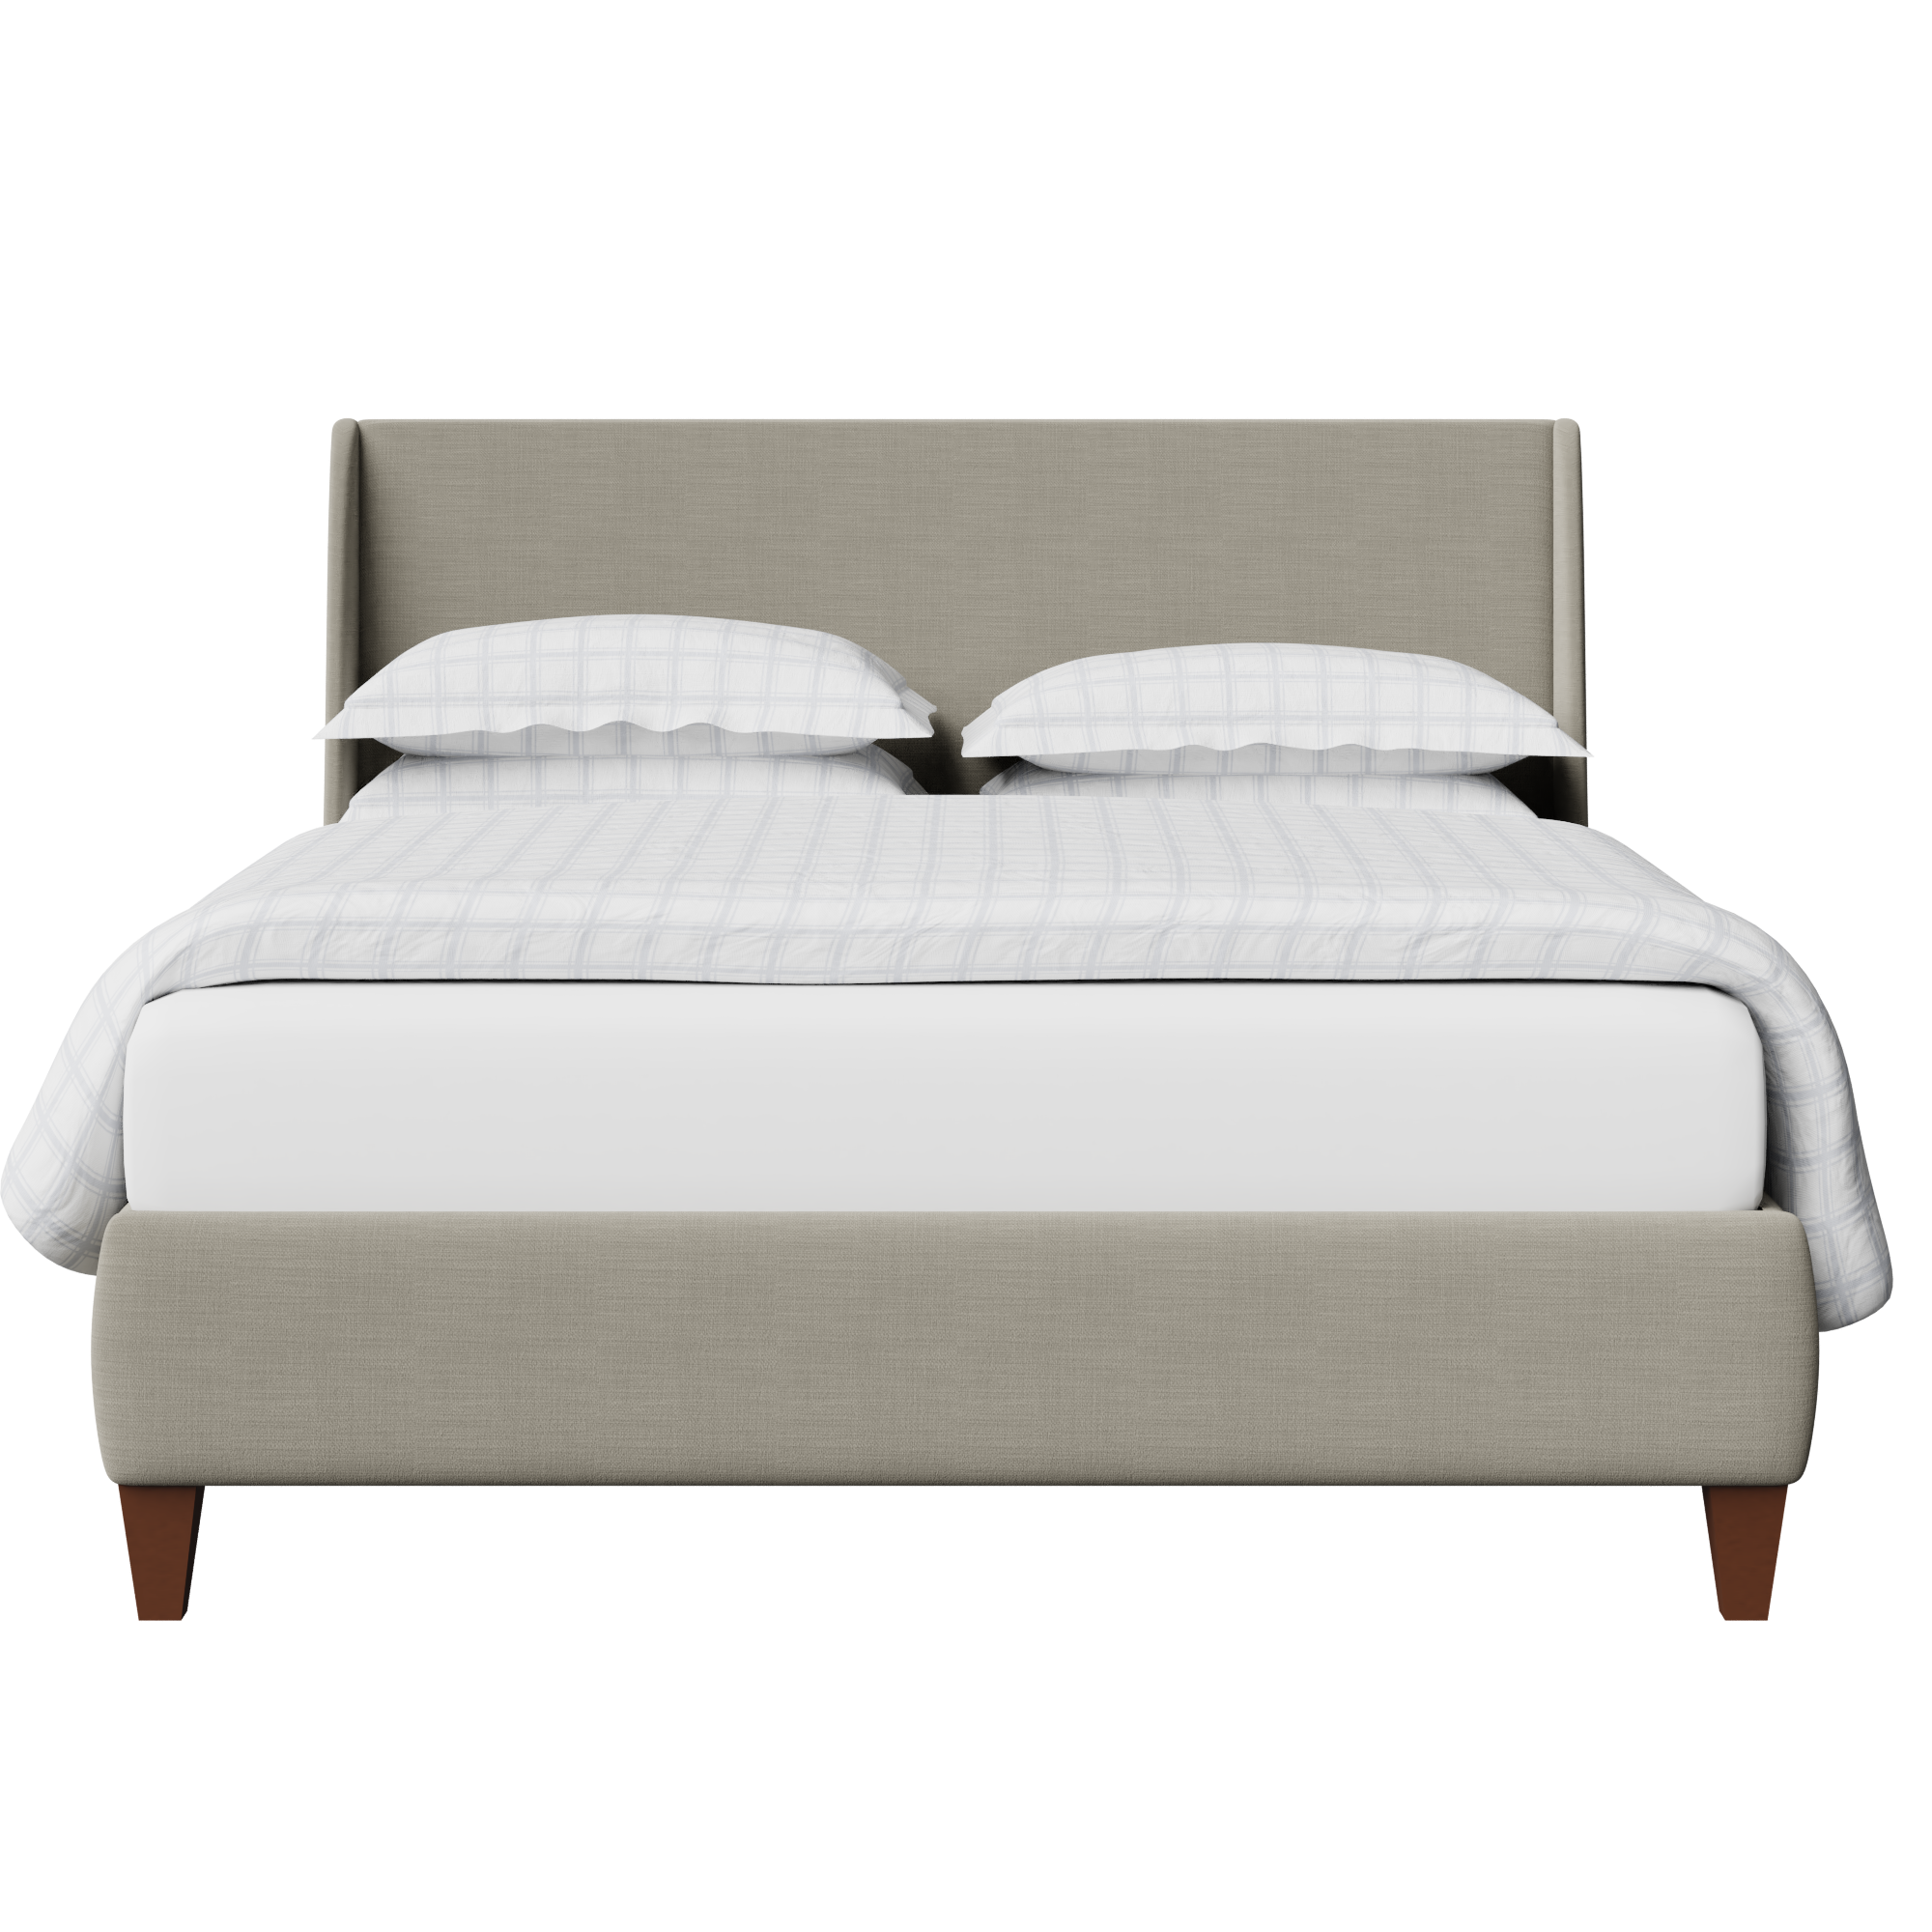 Sunderland cama tapizada en tela gris